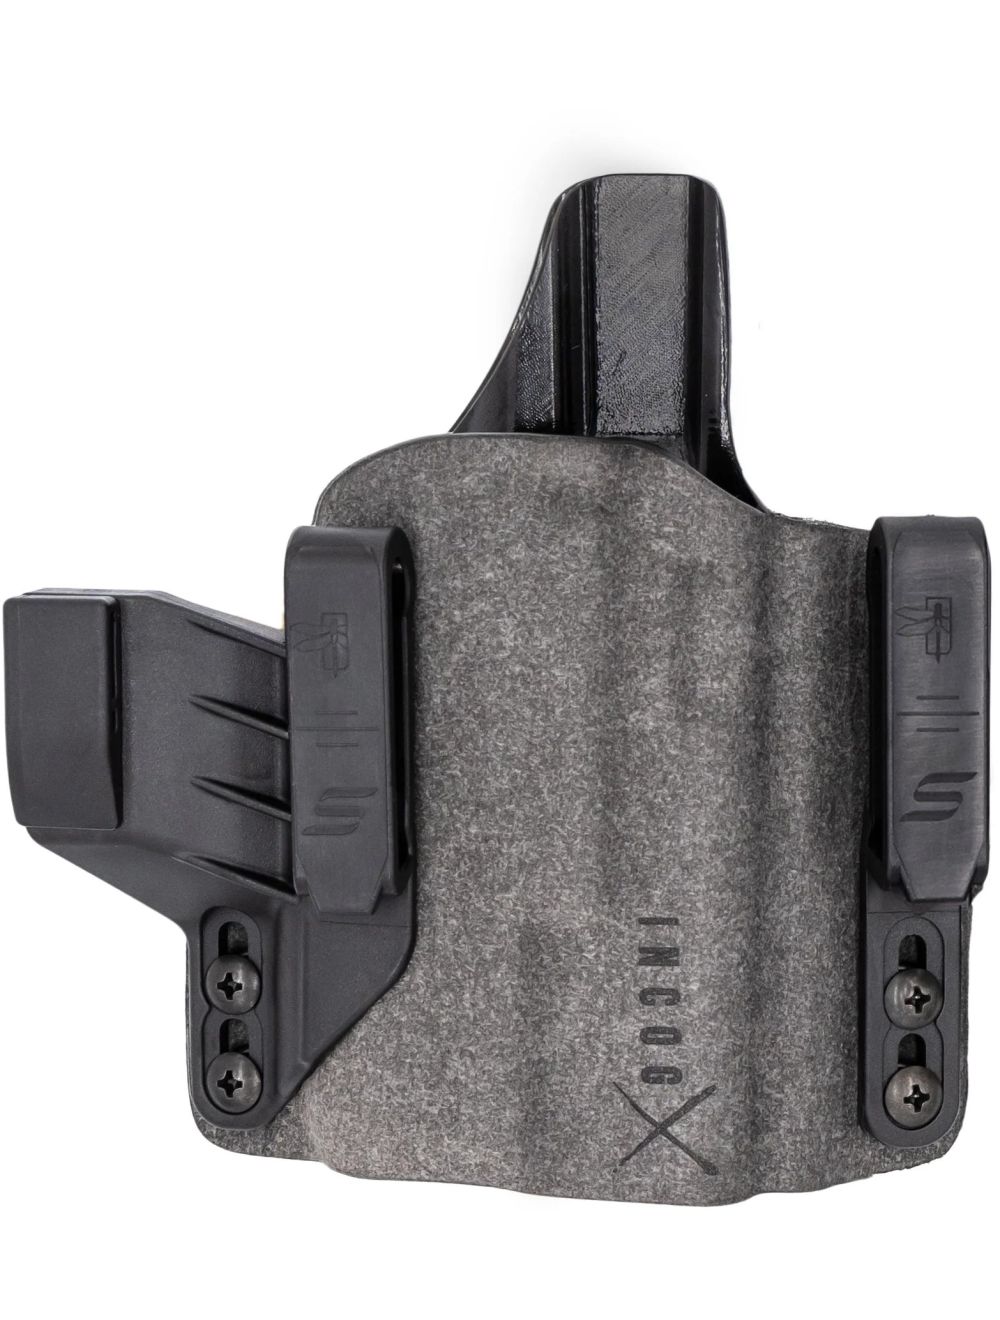 IncogX IWB Holster for Glock 43X/48 w/ Light